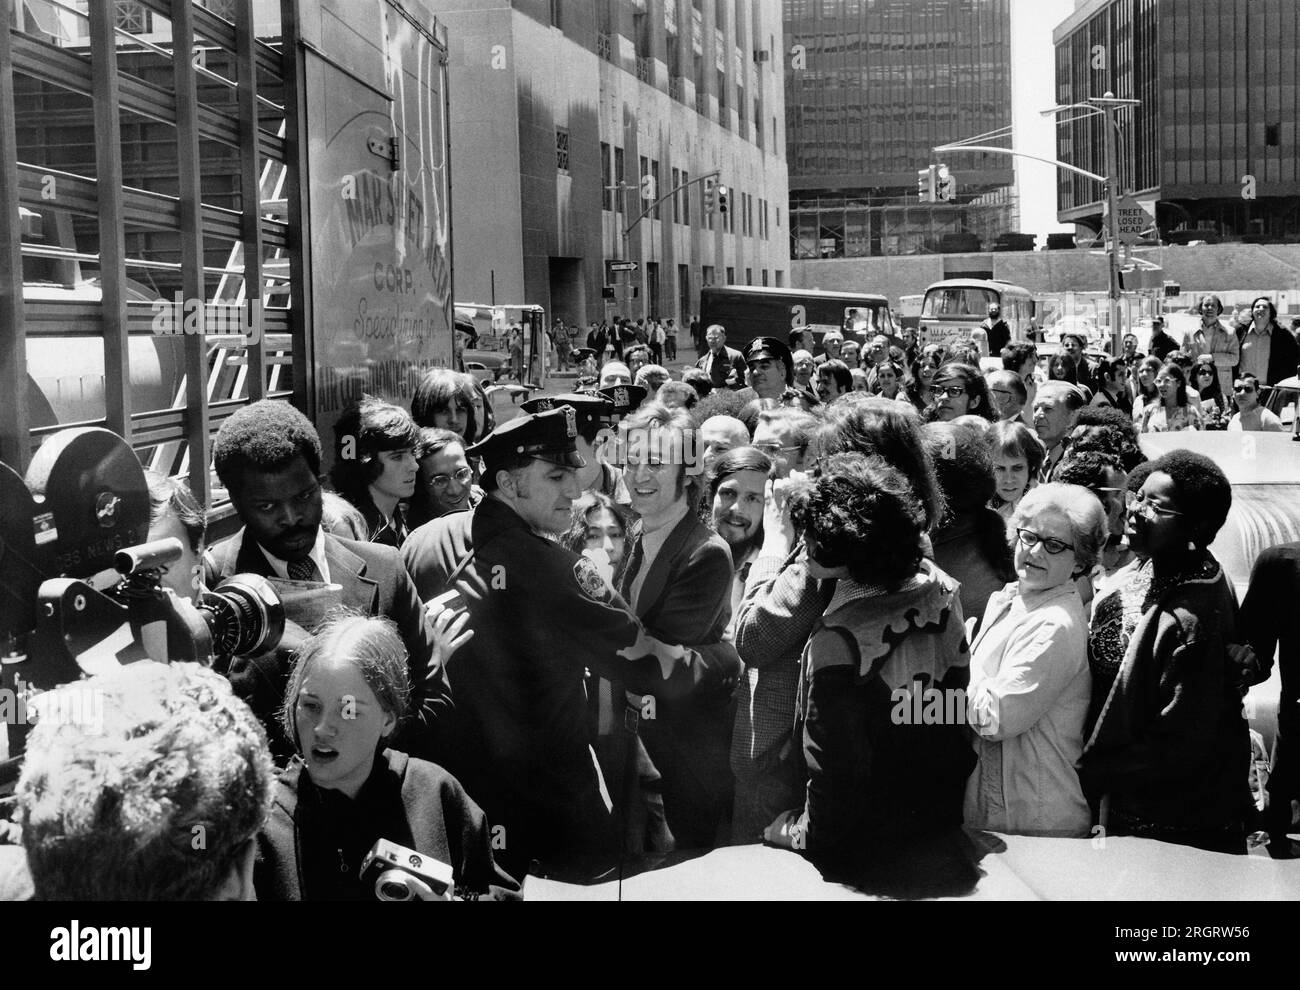 New York, New York: Am 12. Mai 1972 werden John Lennon und Yoko Ono von einem Polizisten unterstützt, der versucht, sich durch die Menge zu arbeiten, nachdem er das Einwanderungsamt am Broadway verlassen hat. Stockfoto